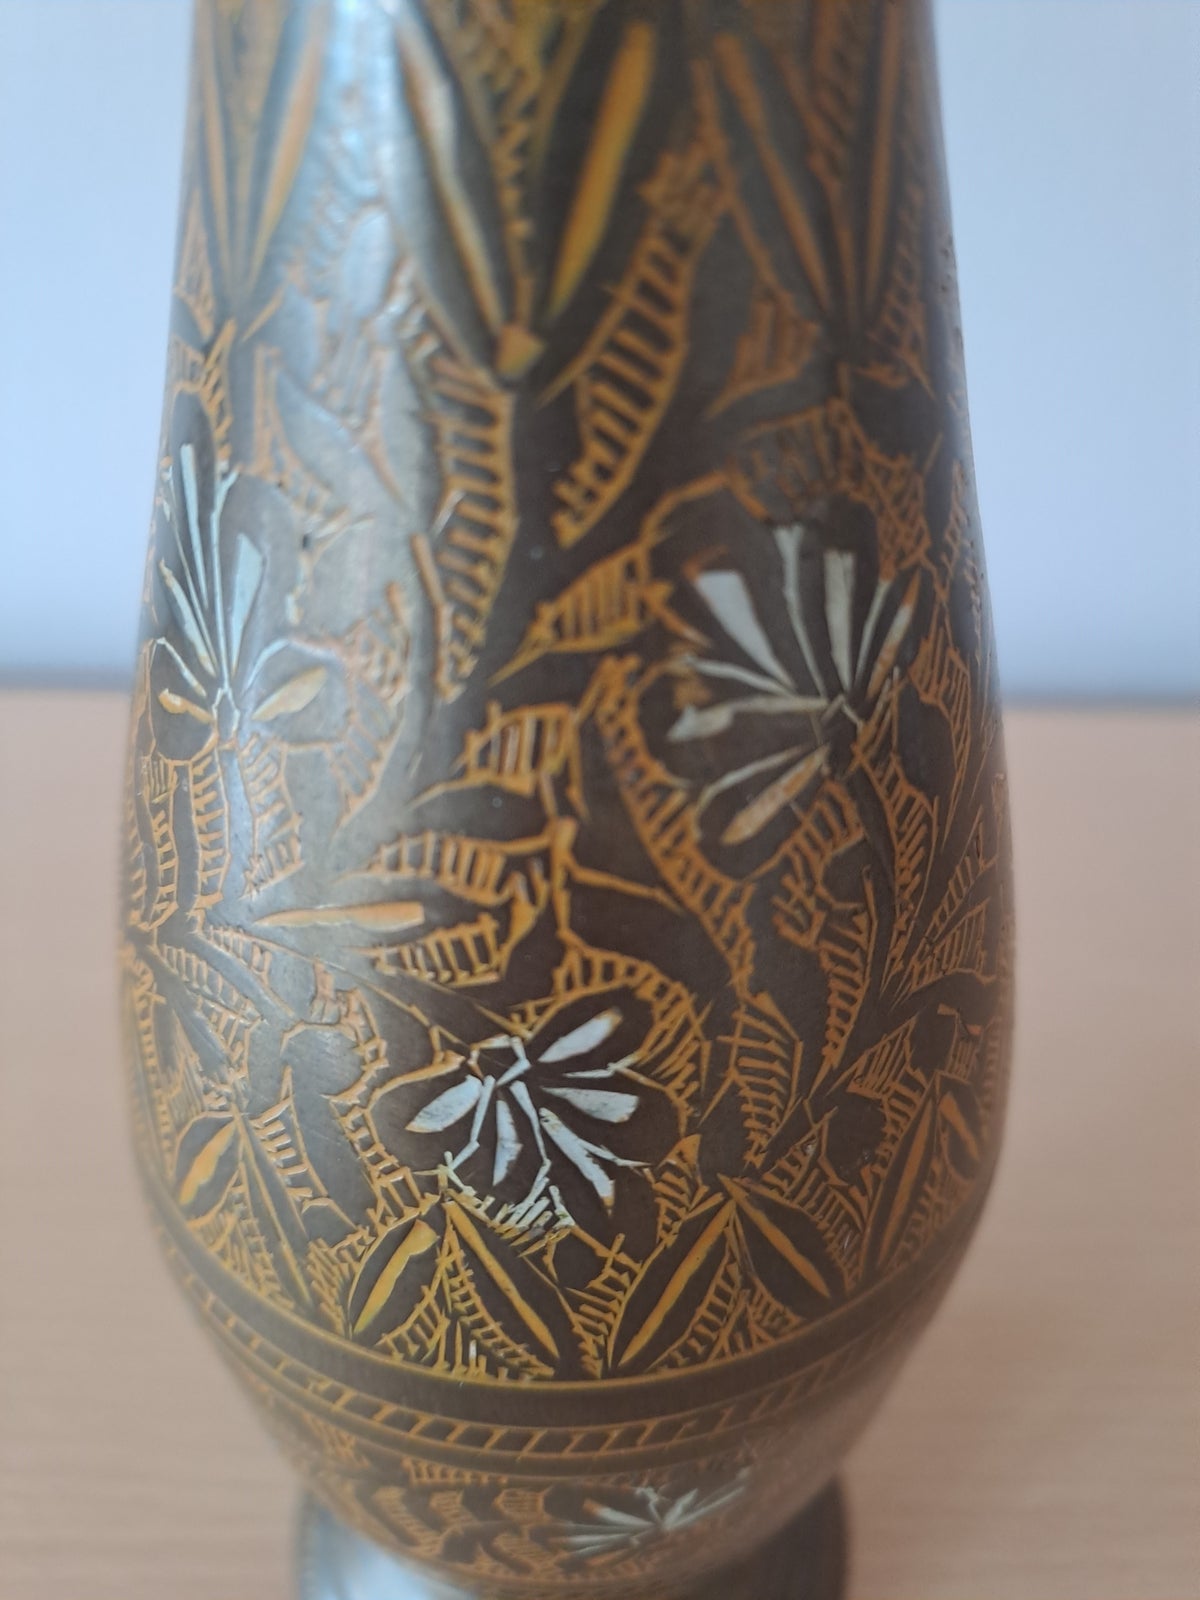 Gamle messing vaser, motiv: Indgraverede mønstre